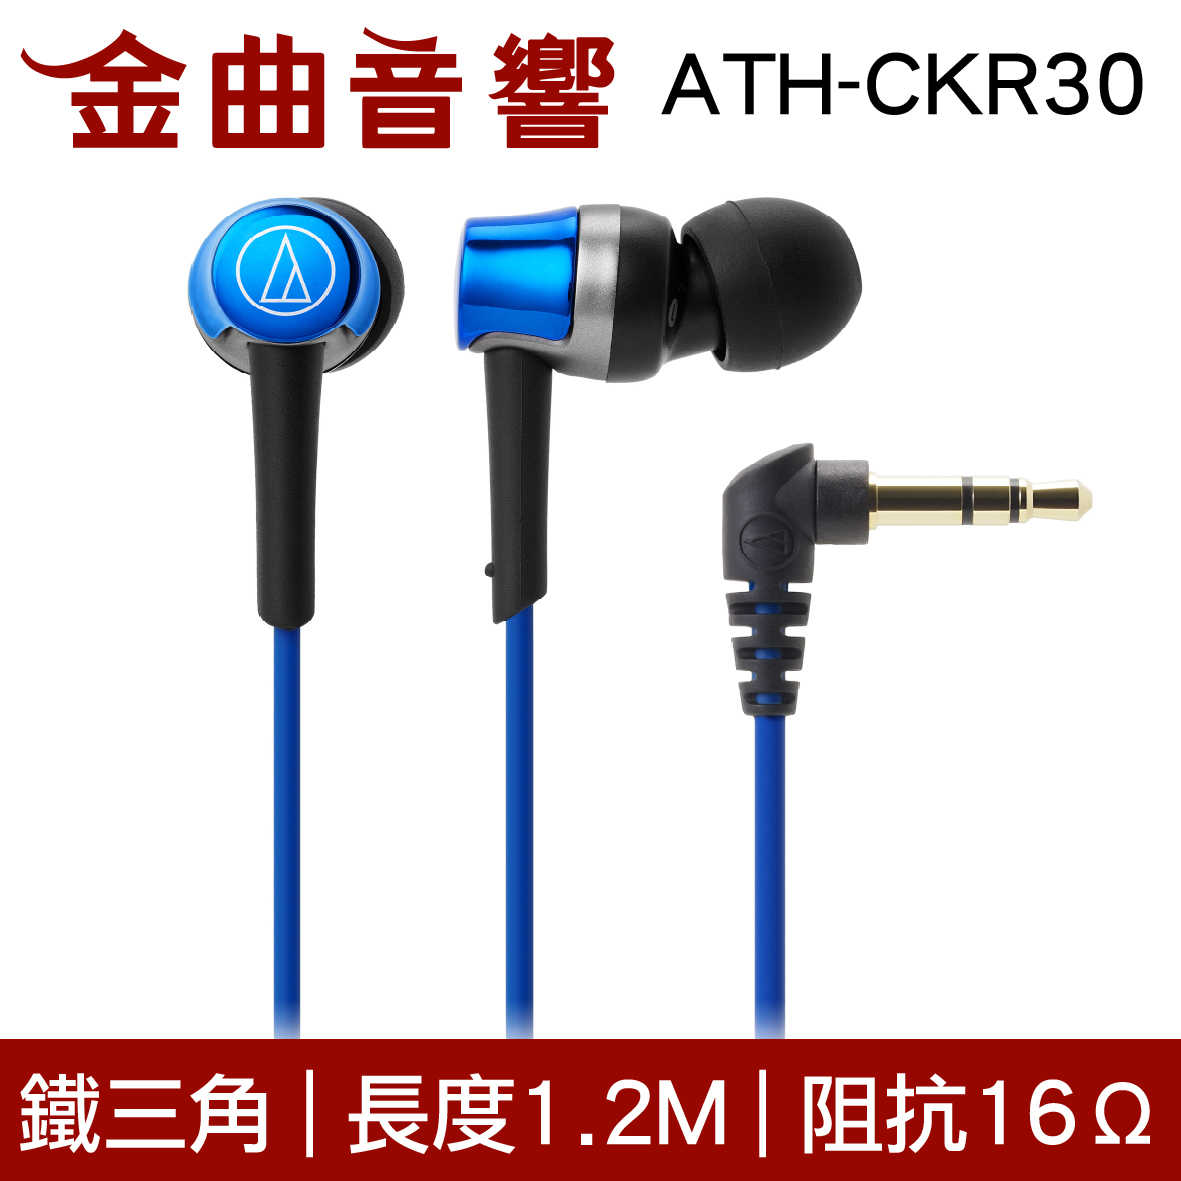 鐵三角 ATH-CKR30 銀色 無麥克風 耳道式耳機 | 金曲音響